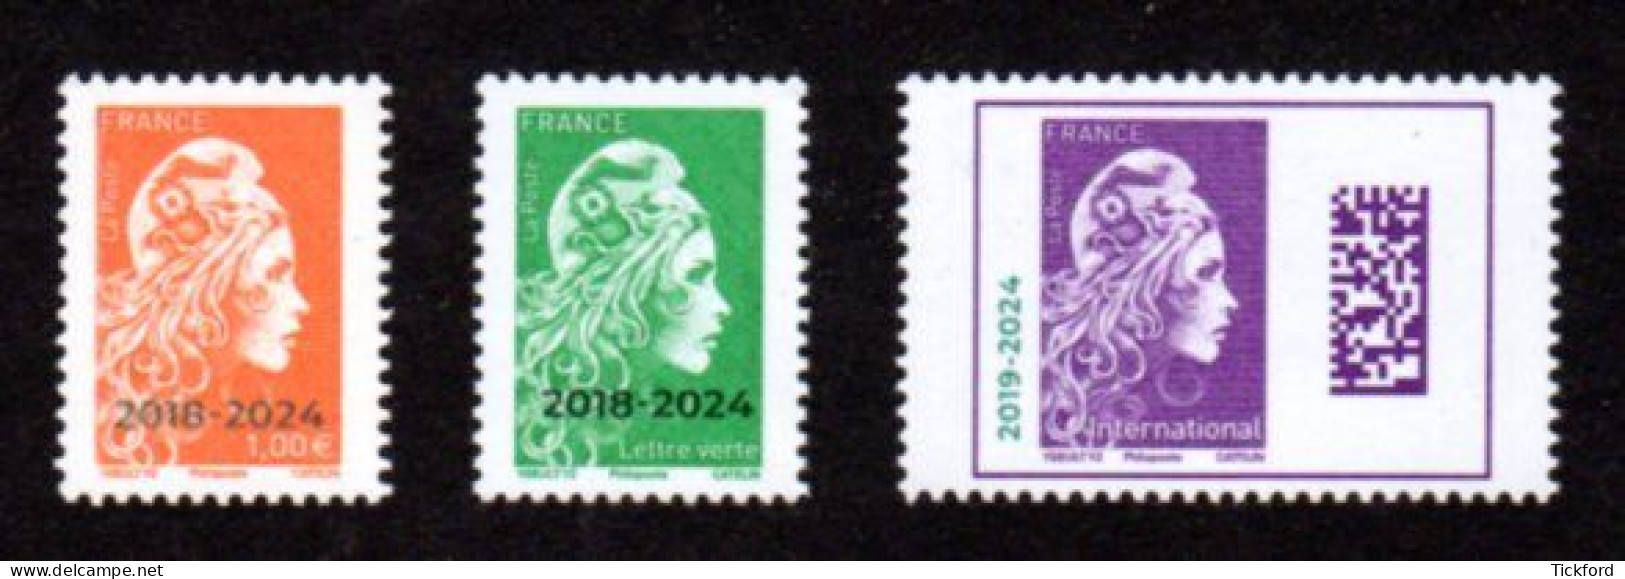 FRANCE 2024 - Neufs ** / MNH - Marianne L'Engagée De Yseult Surchargée 2018 - 2024 - Unused Stamps